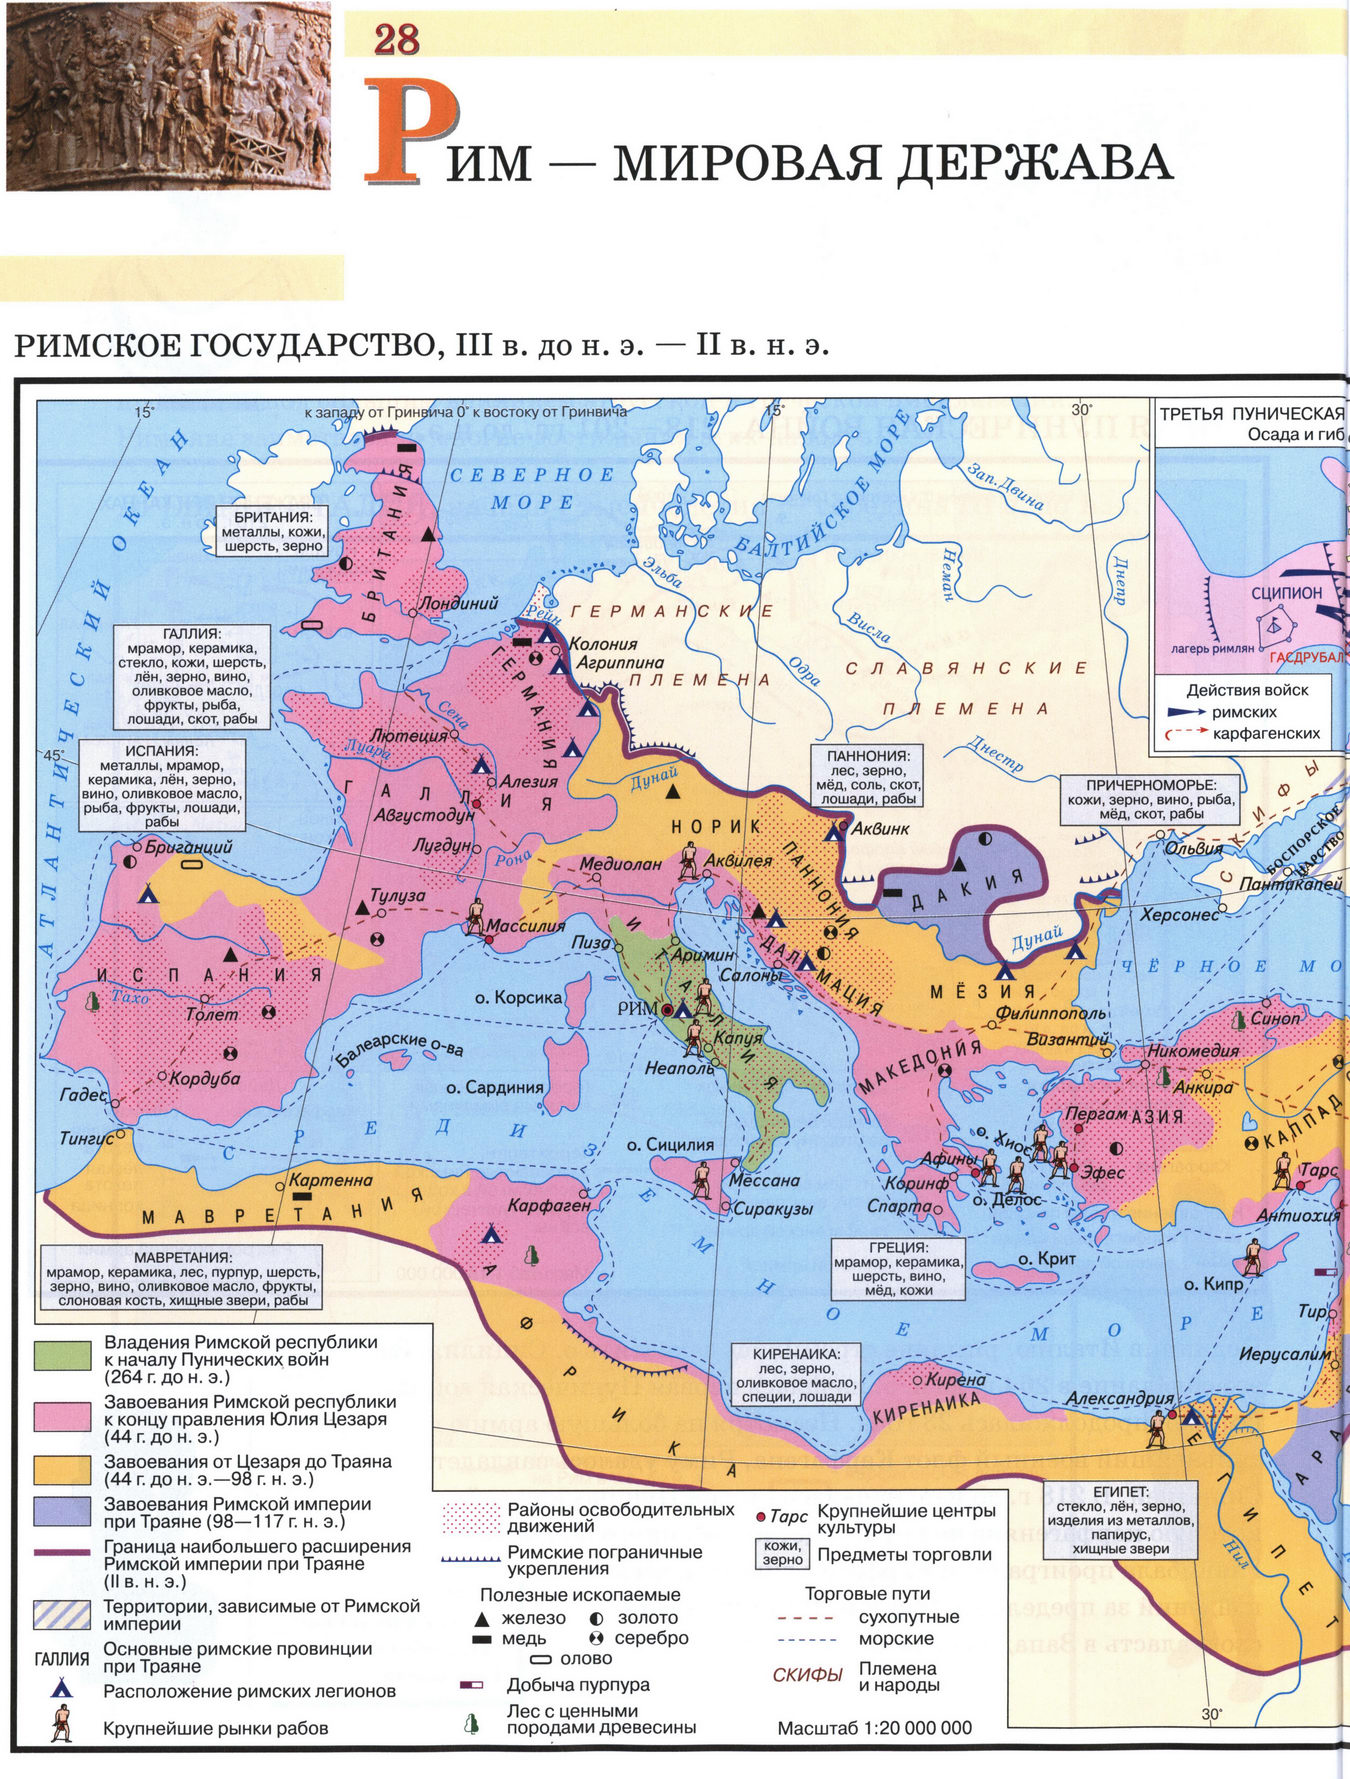 Римское государство - карта атласа по истории Древнего мира